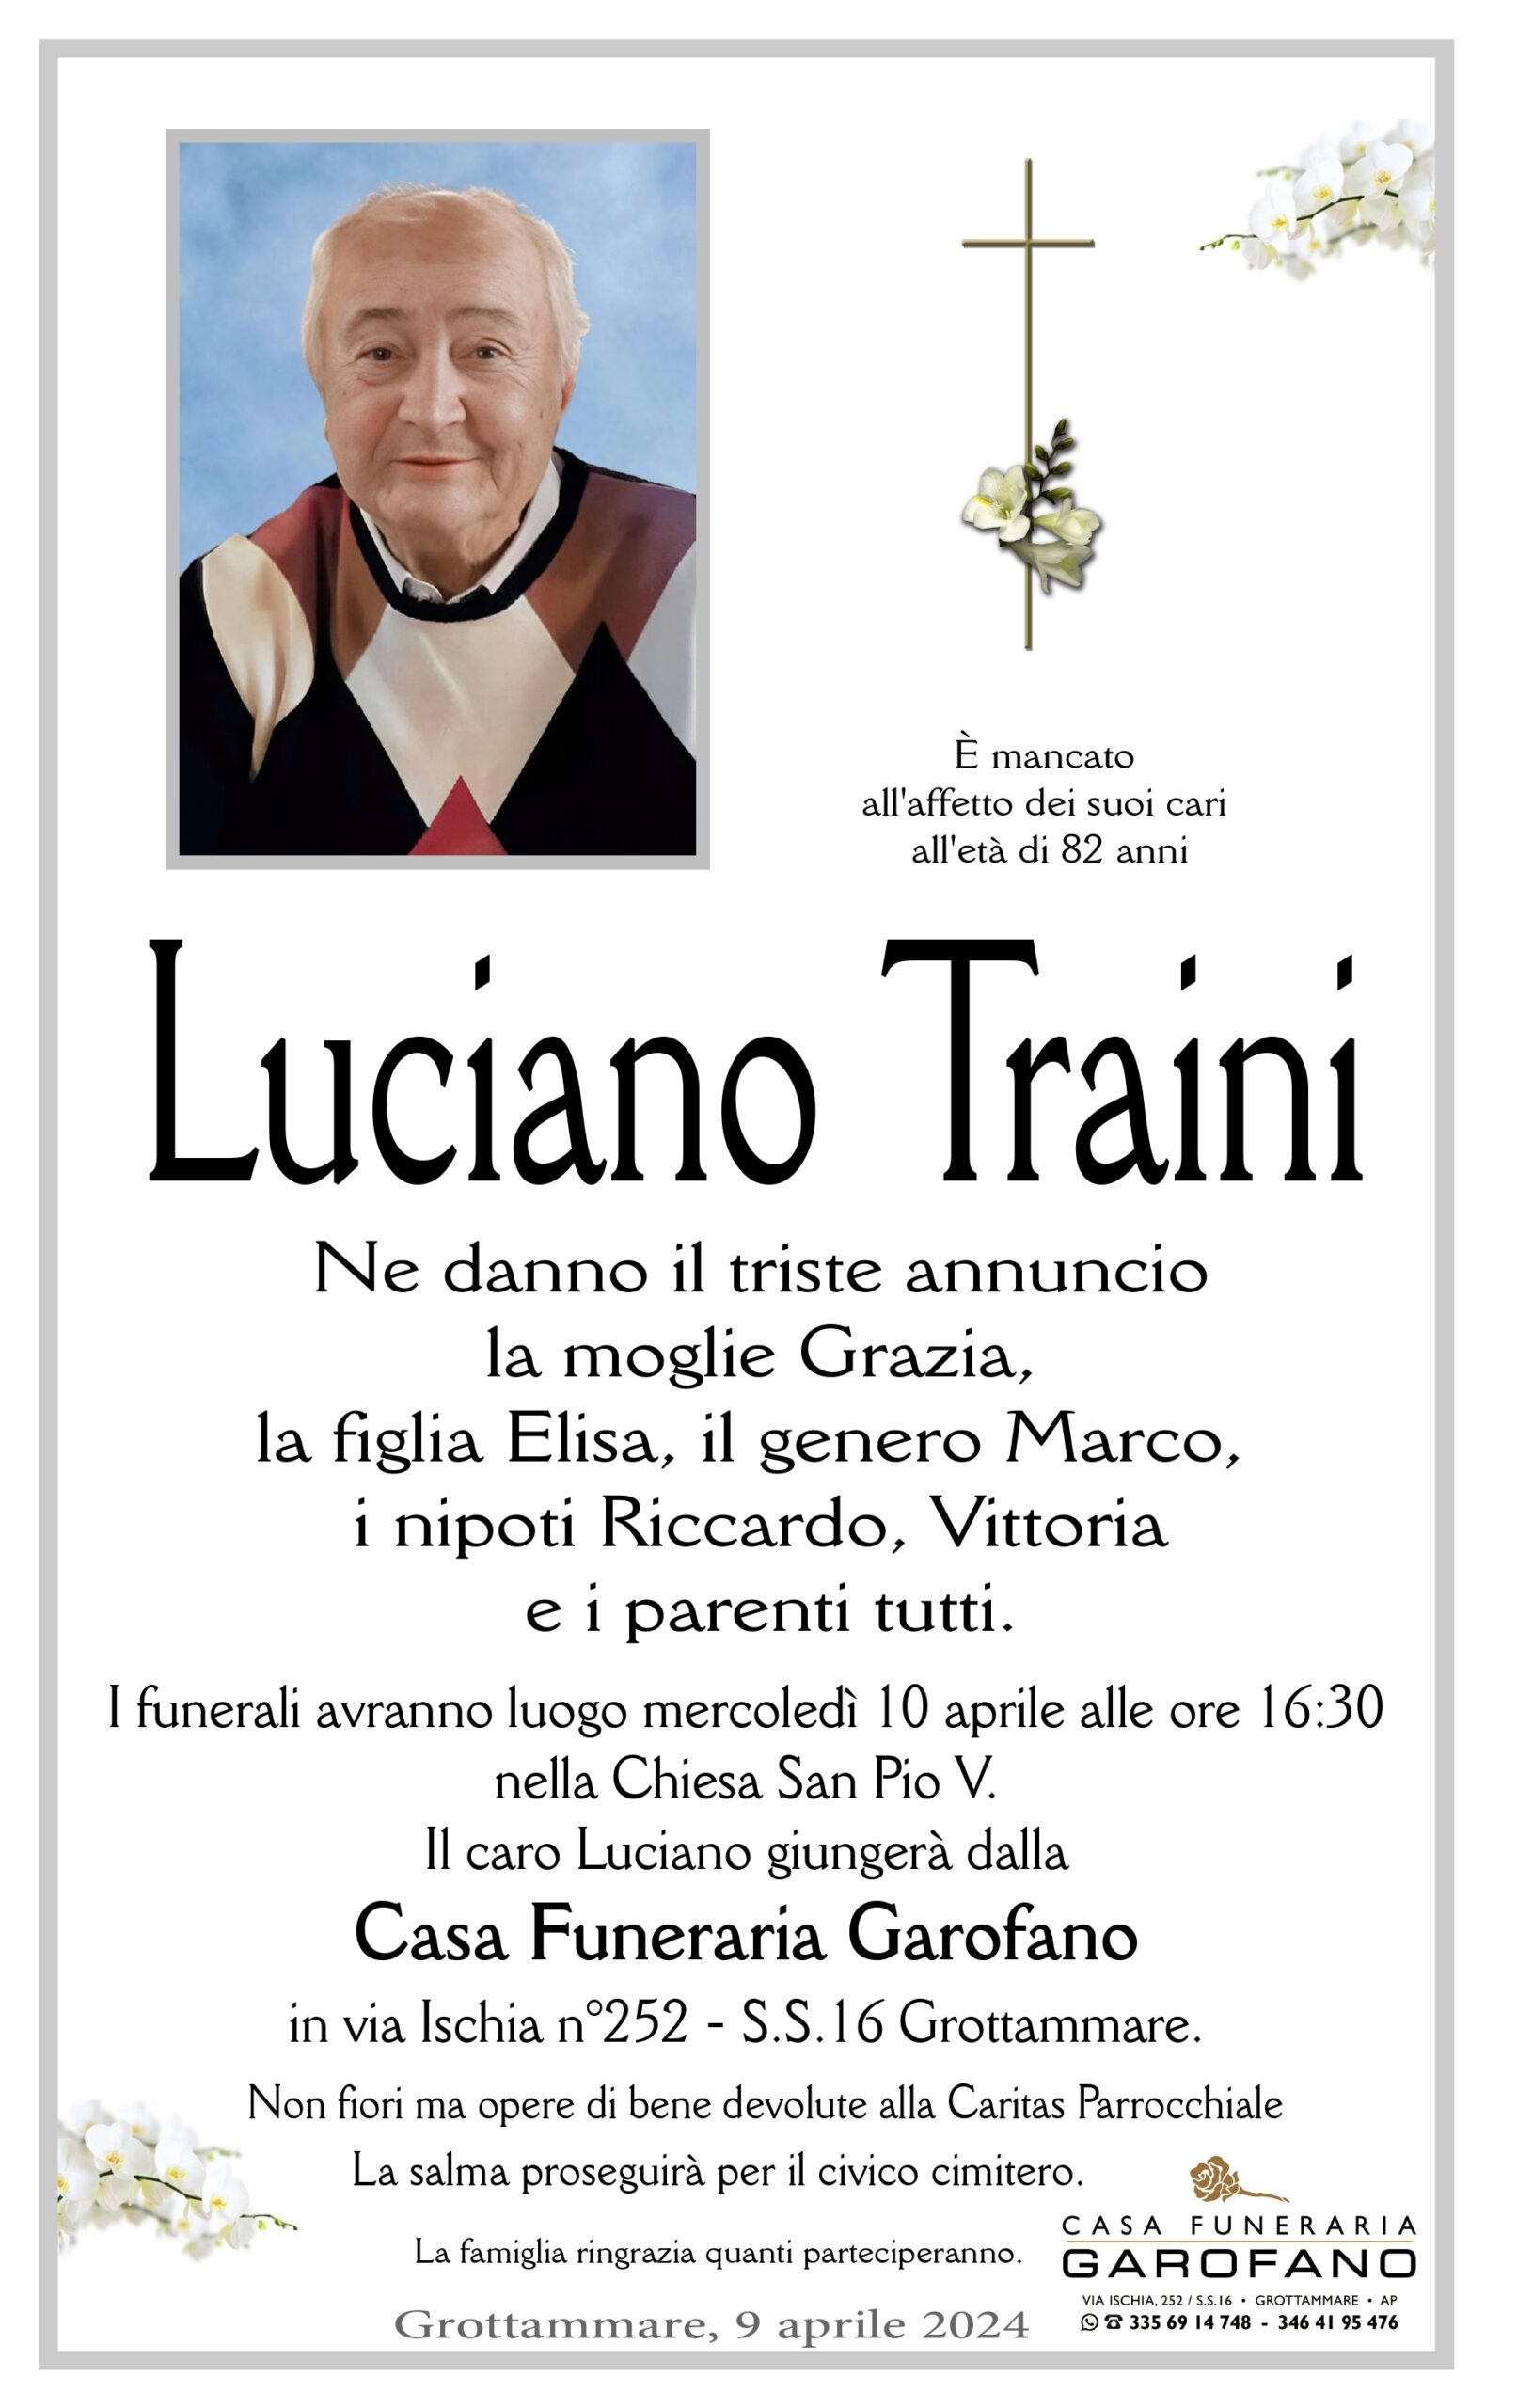 Luciano Traini